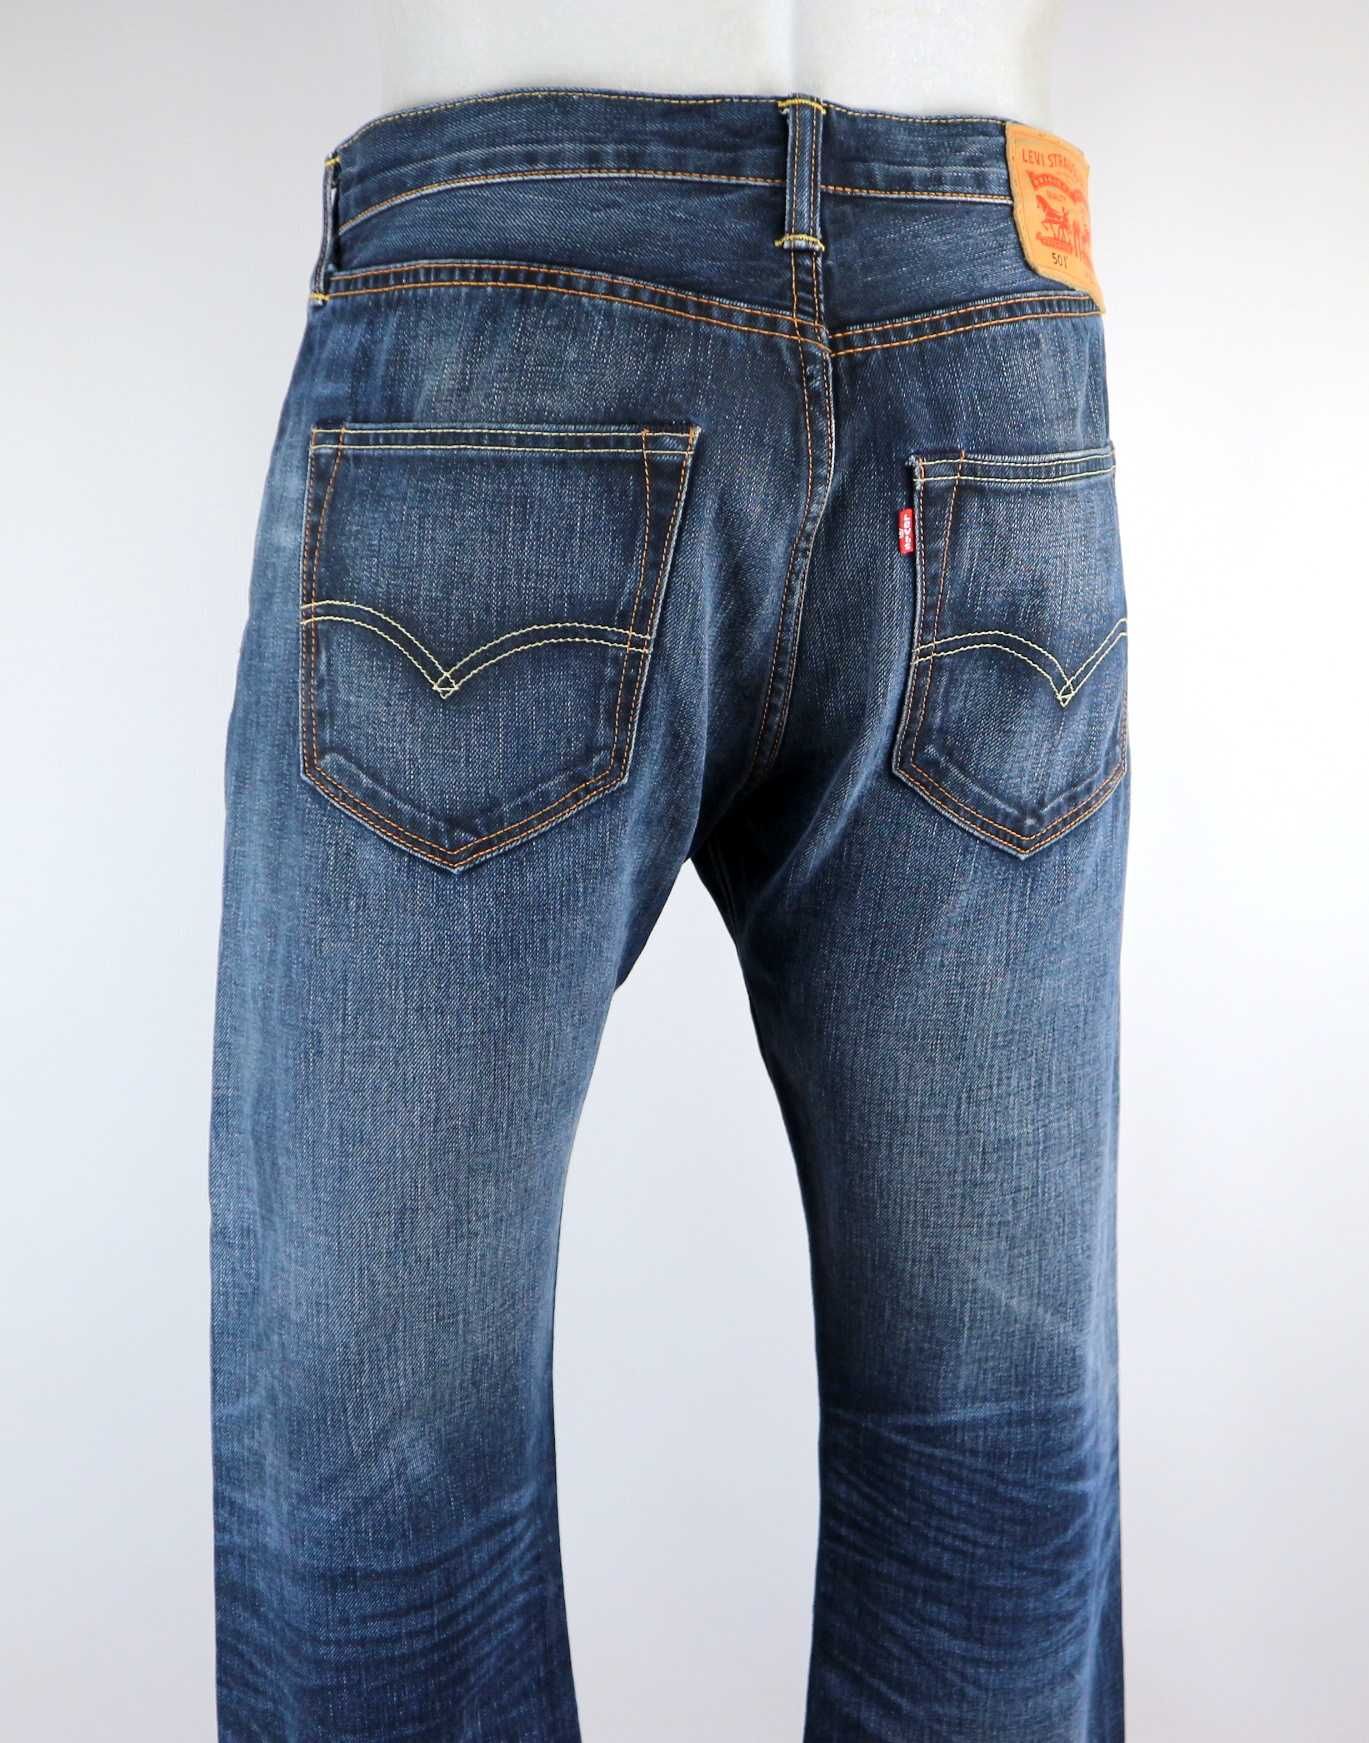 Levis 501 spodnie jeansy W32 L30 pas 2 x 44 cm